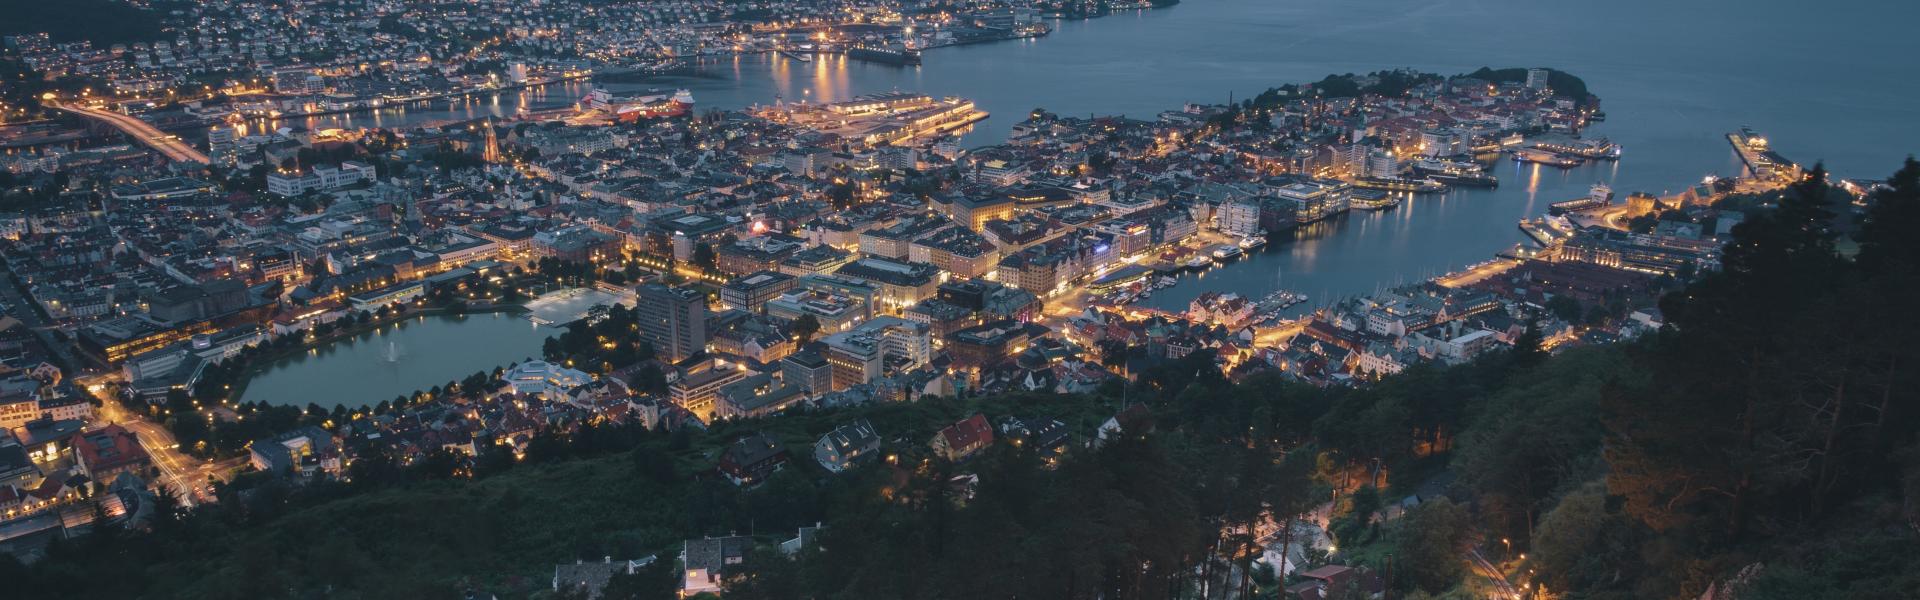 Bergen Scenic View